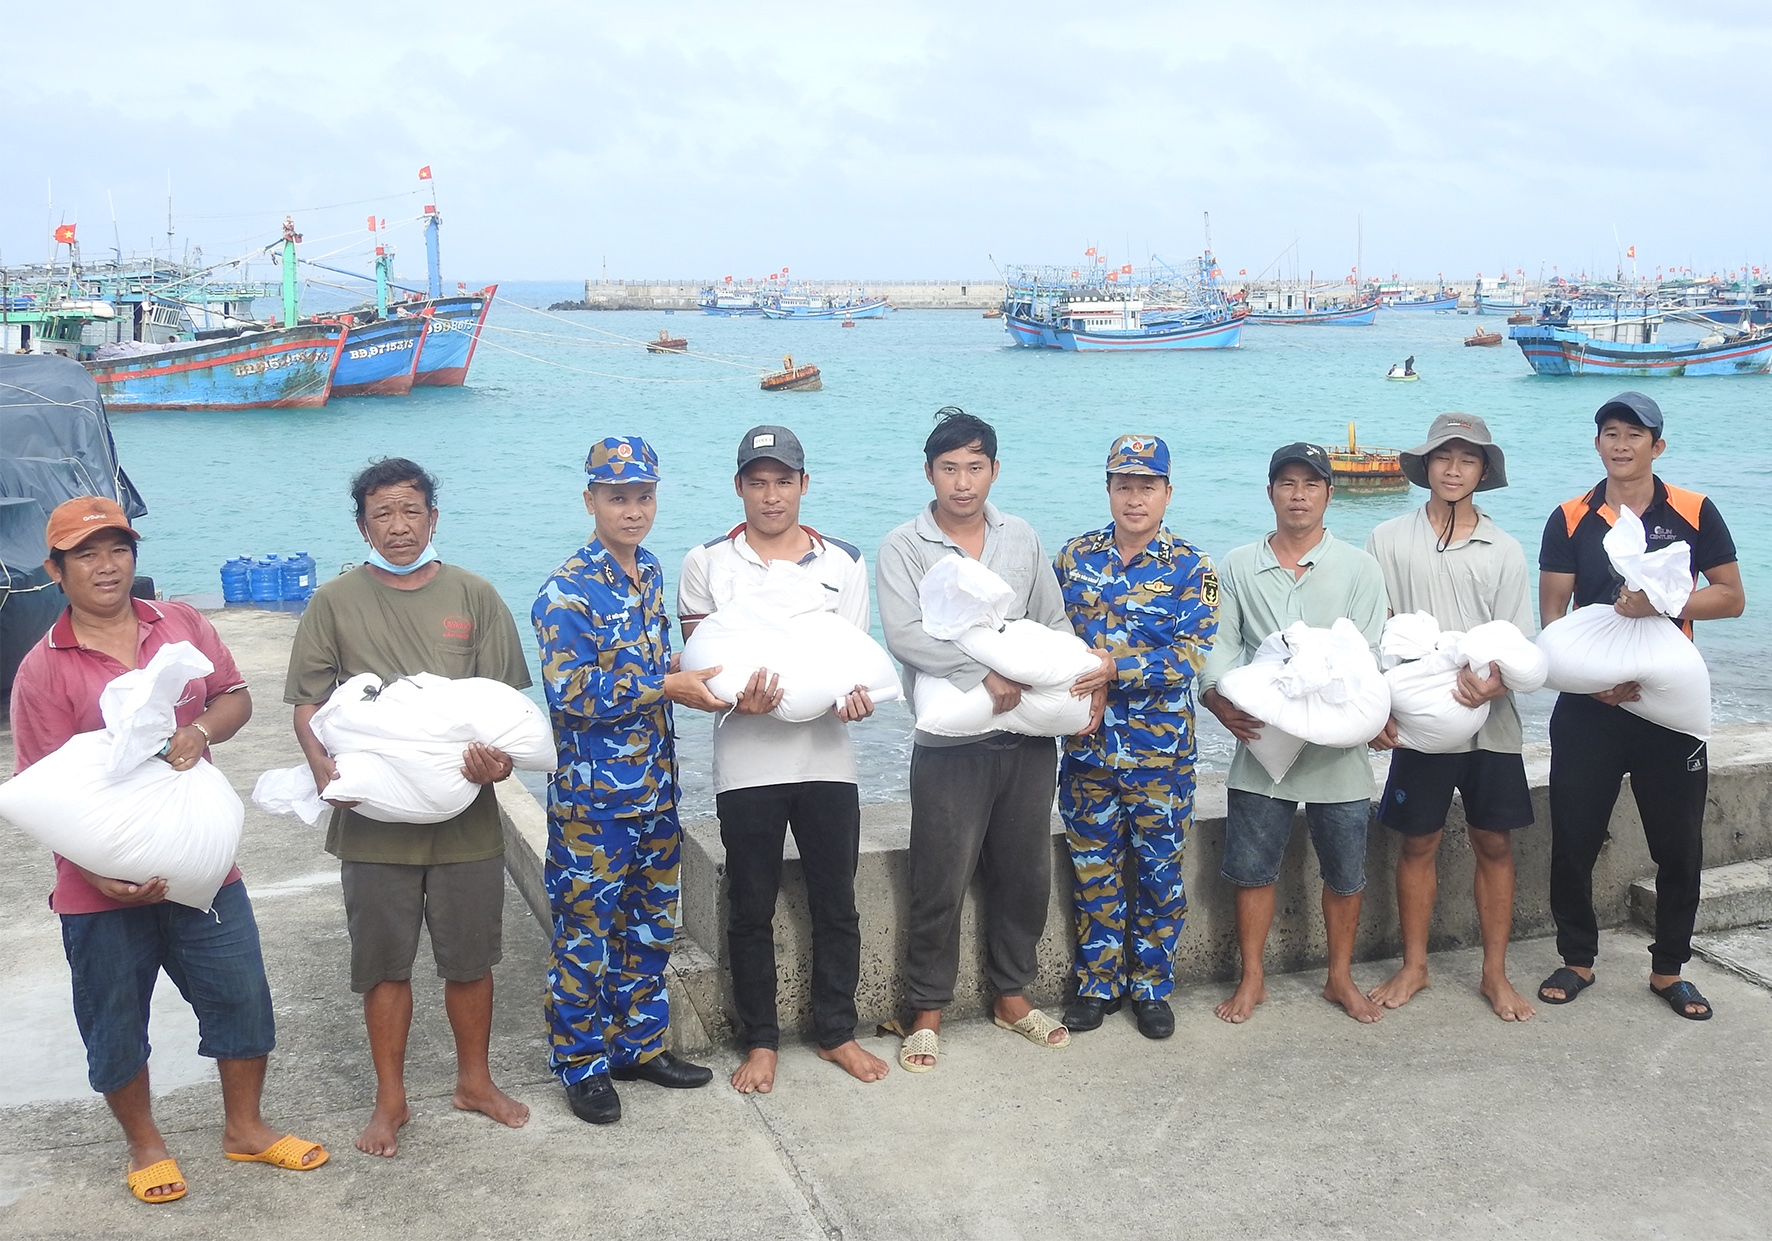 Военный с острова Датай предоставили рис и воду рыбакам 45 судов из провинции Ниньтхуан